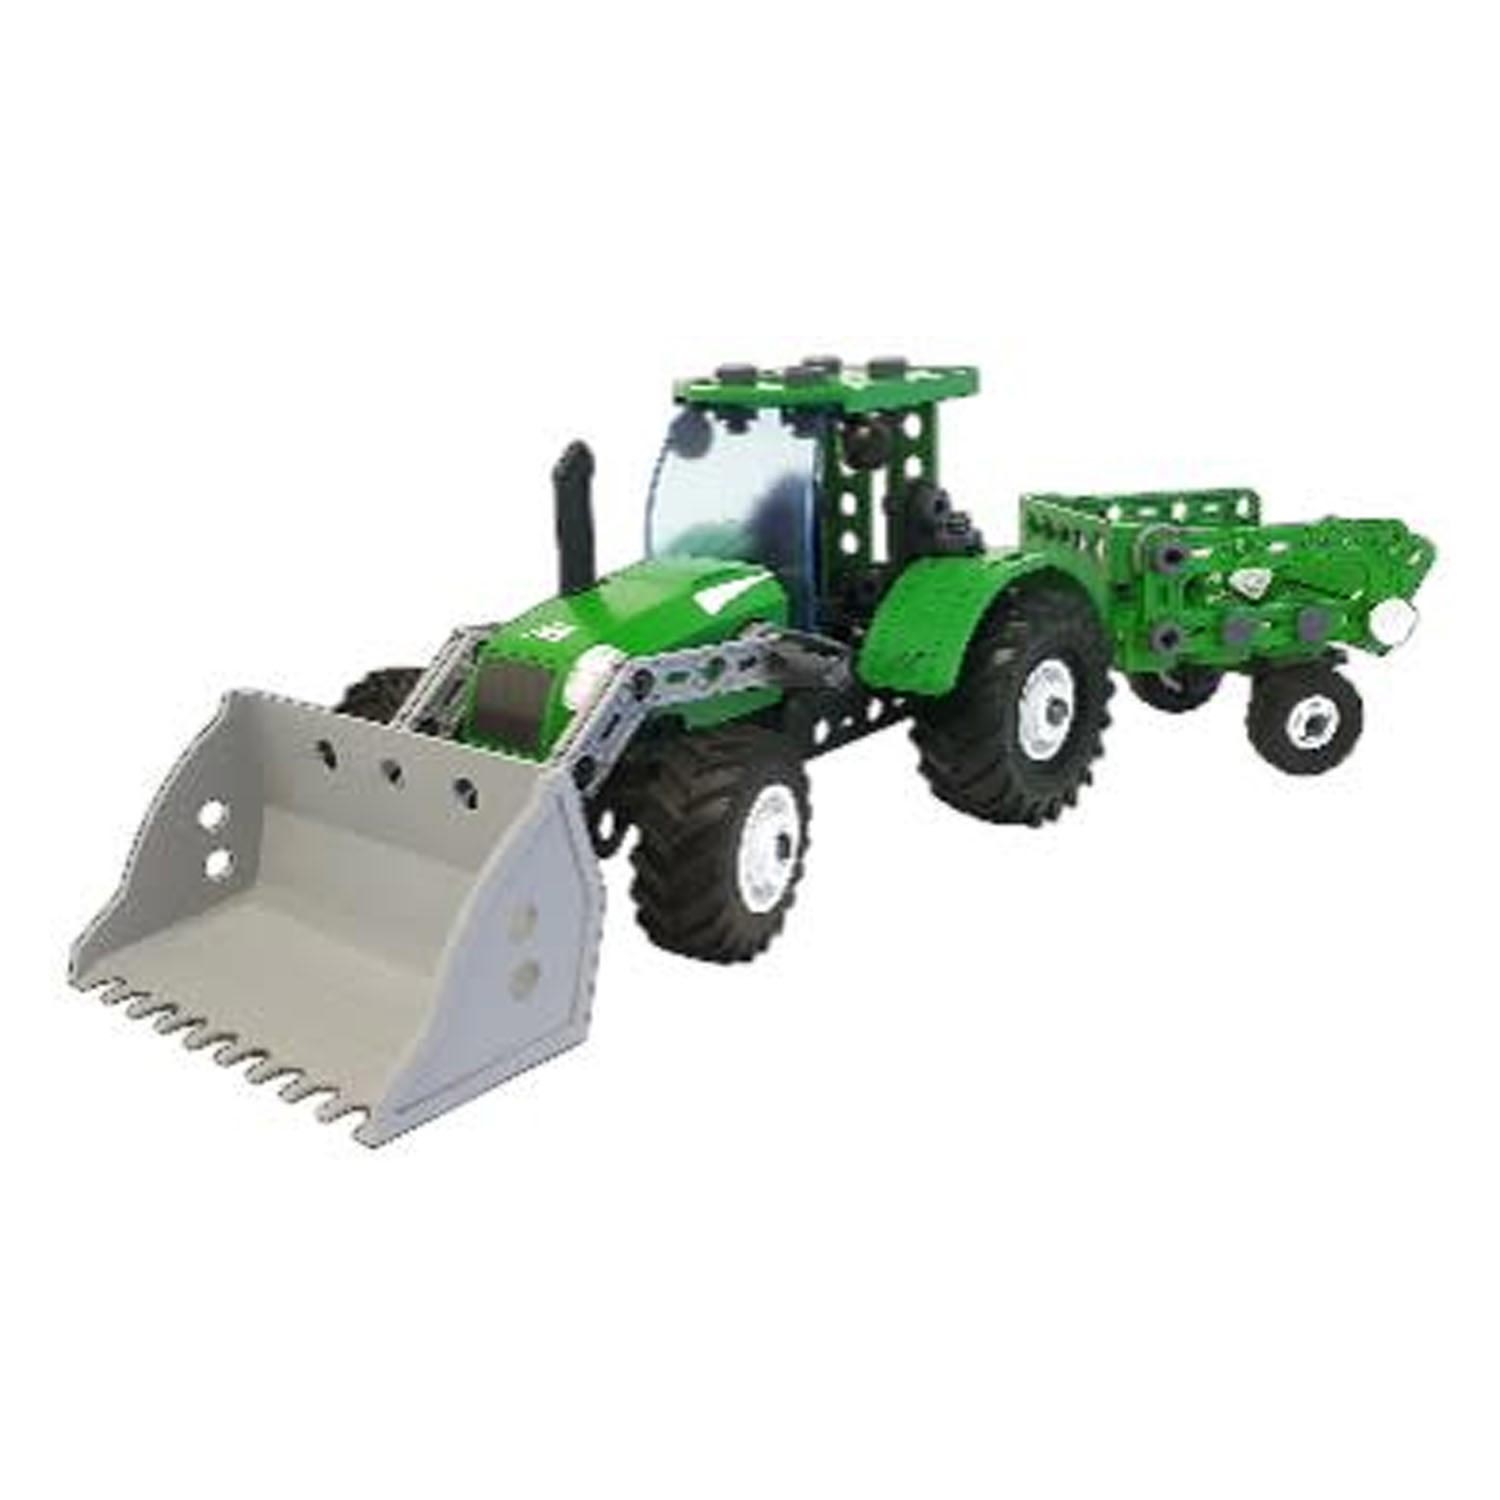 Meccano Junior – Traktor-STEM-Bausatz